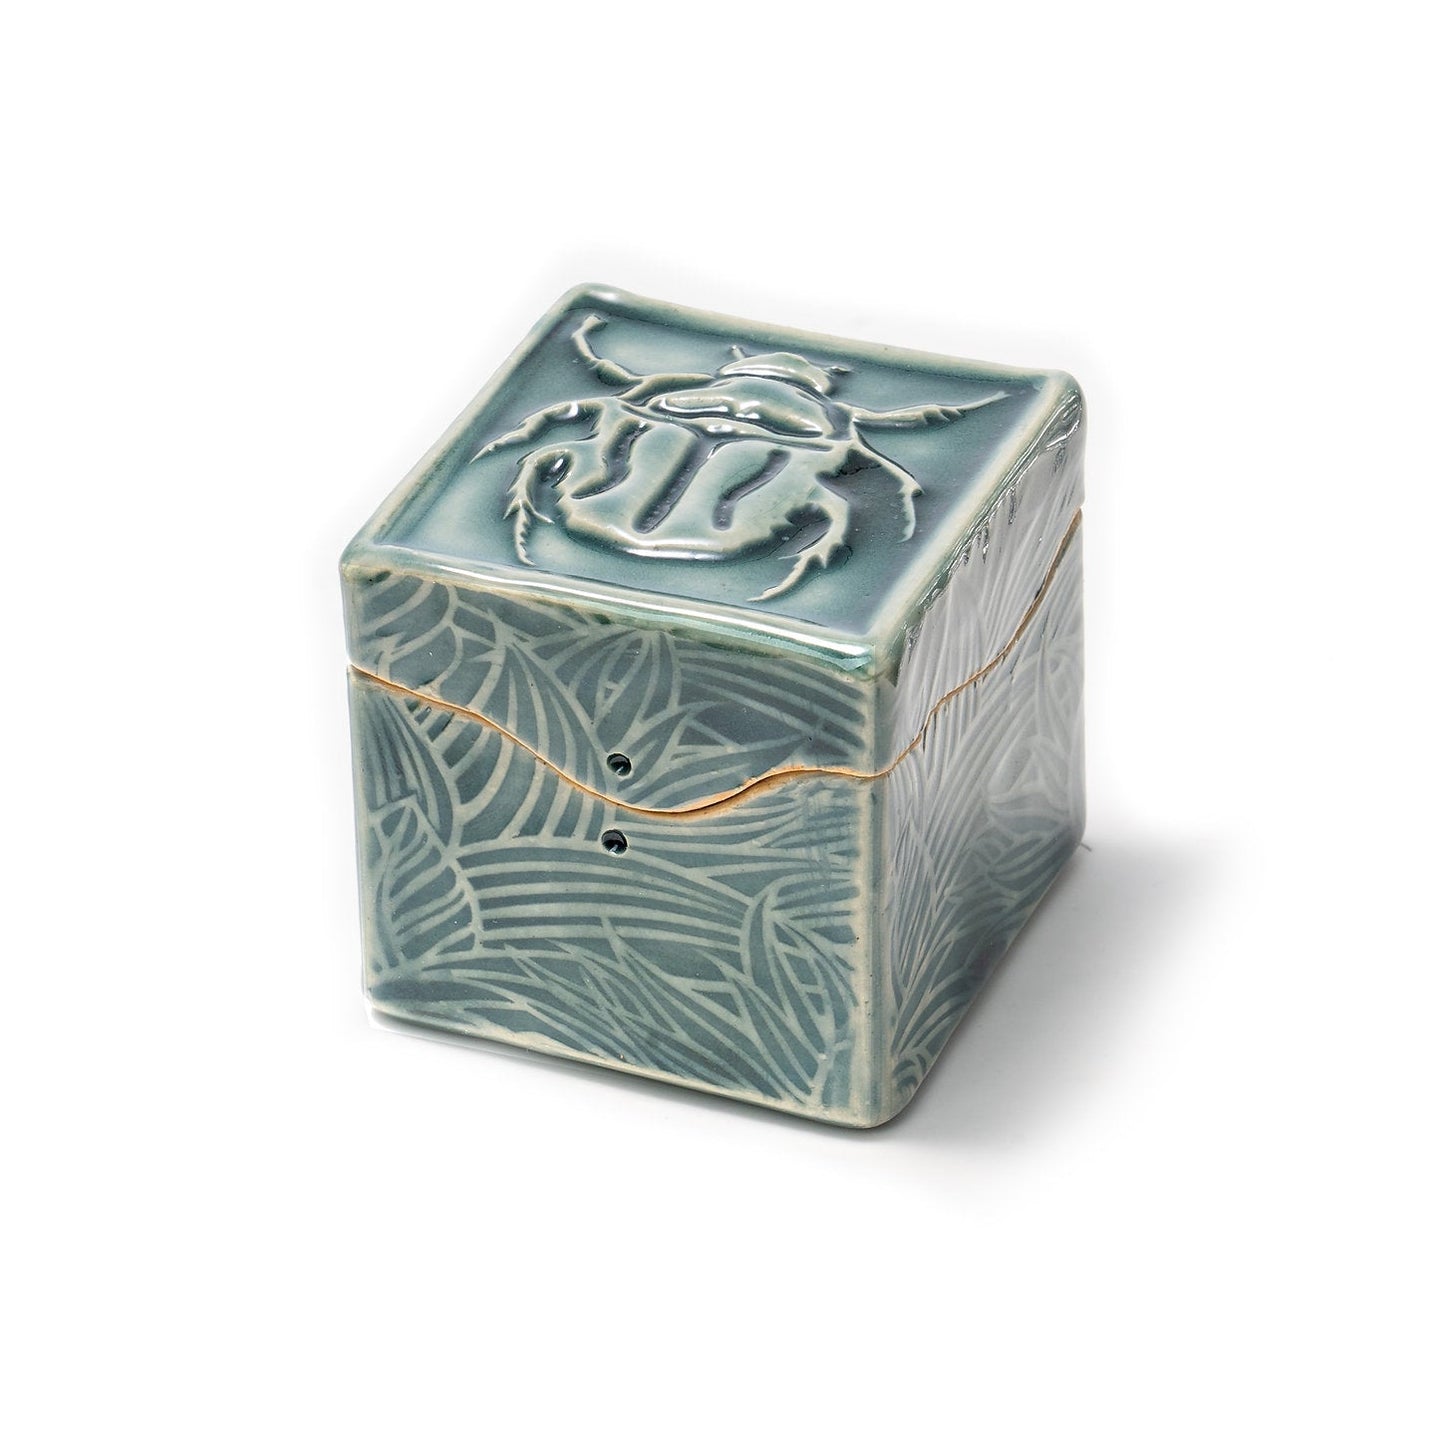 Handgemachte Keramik Itty Bitty Box: Skarabäus-Käfer